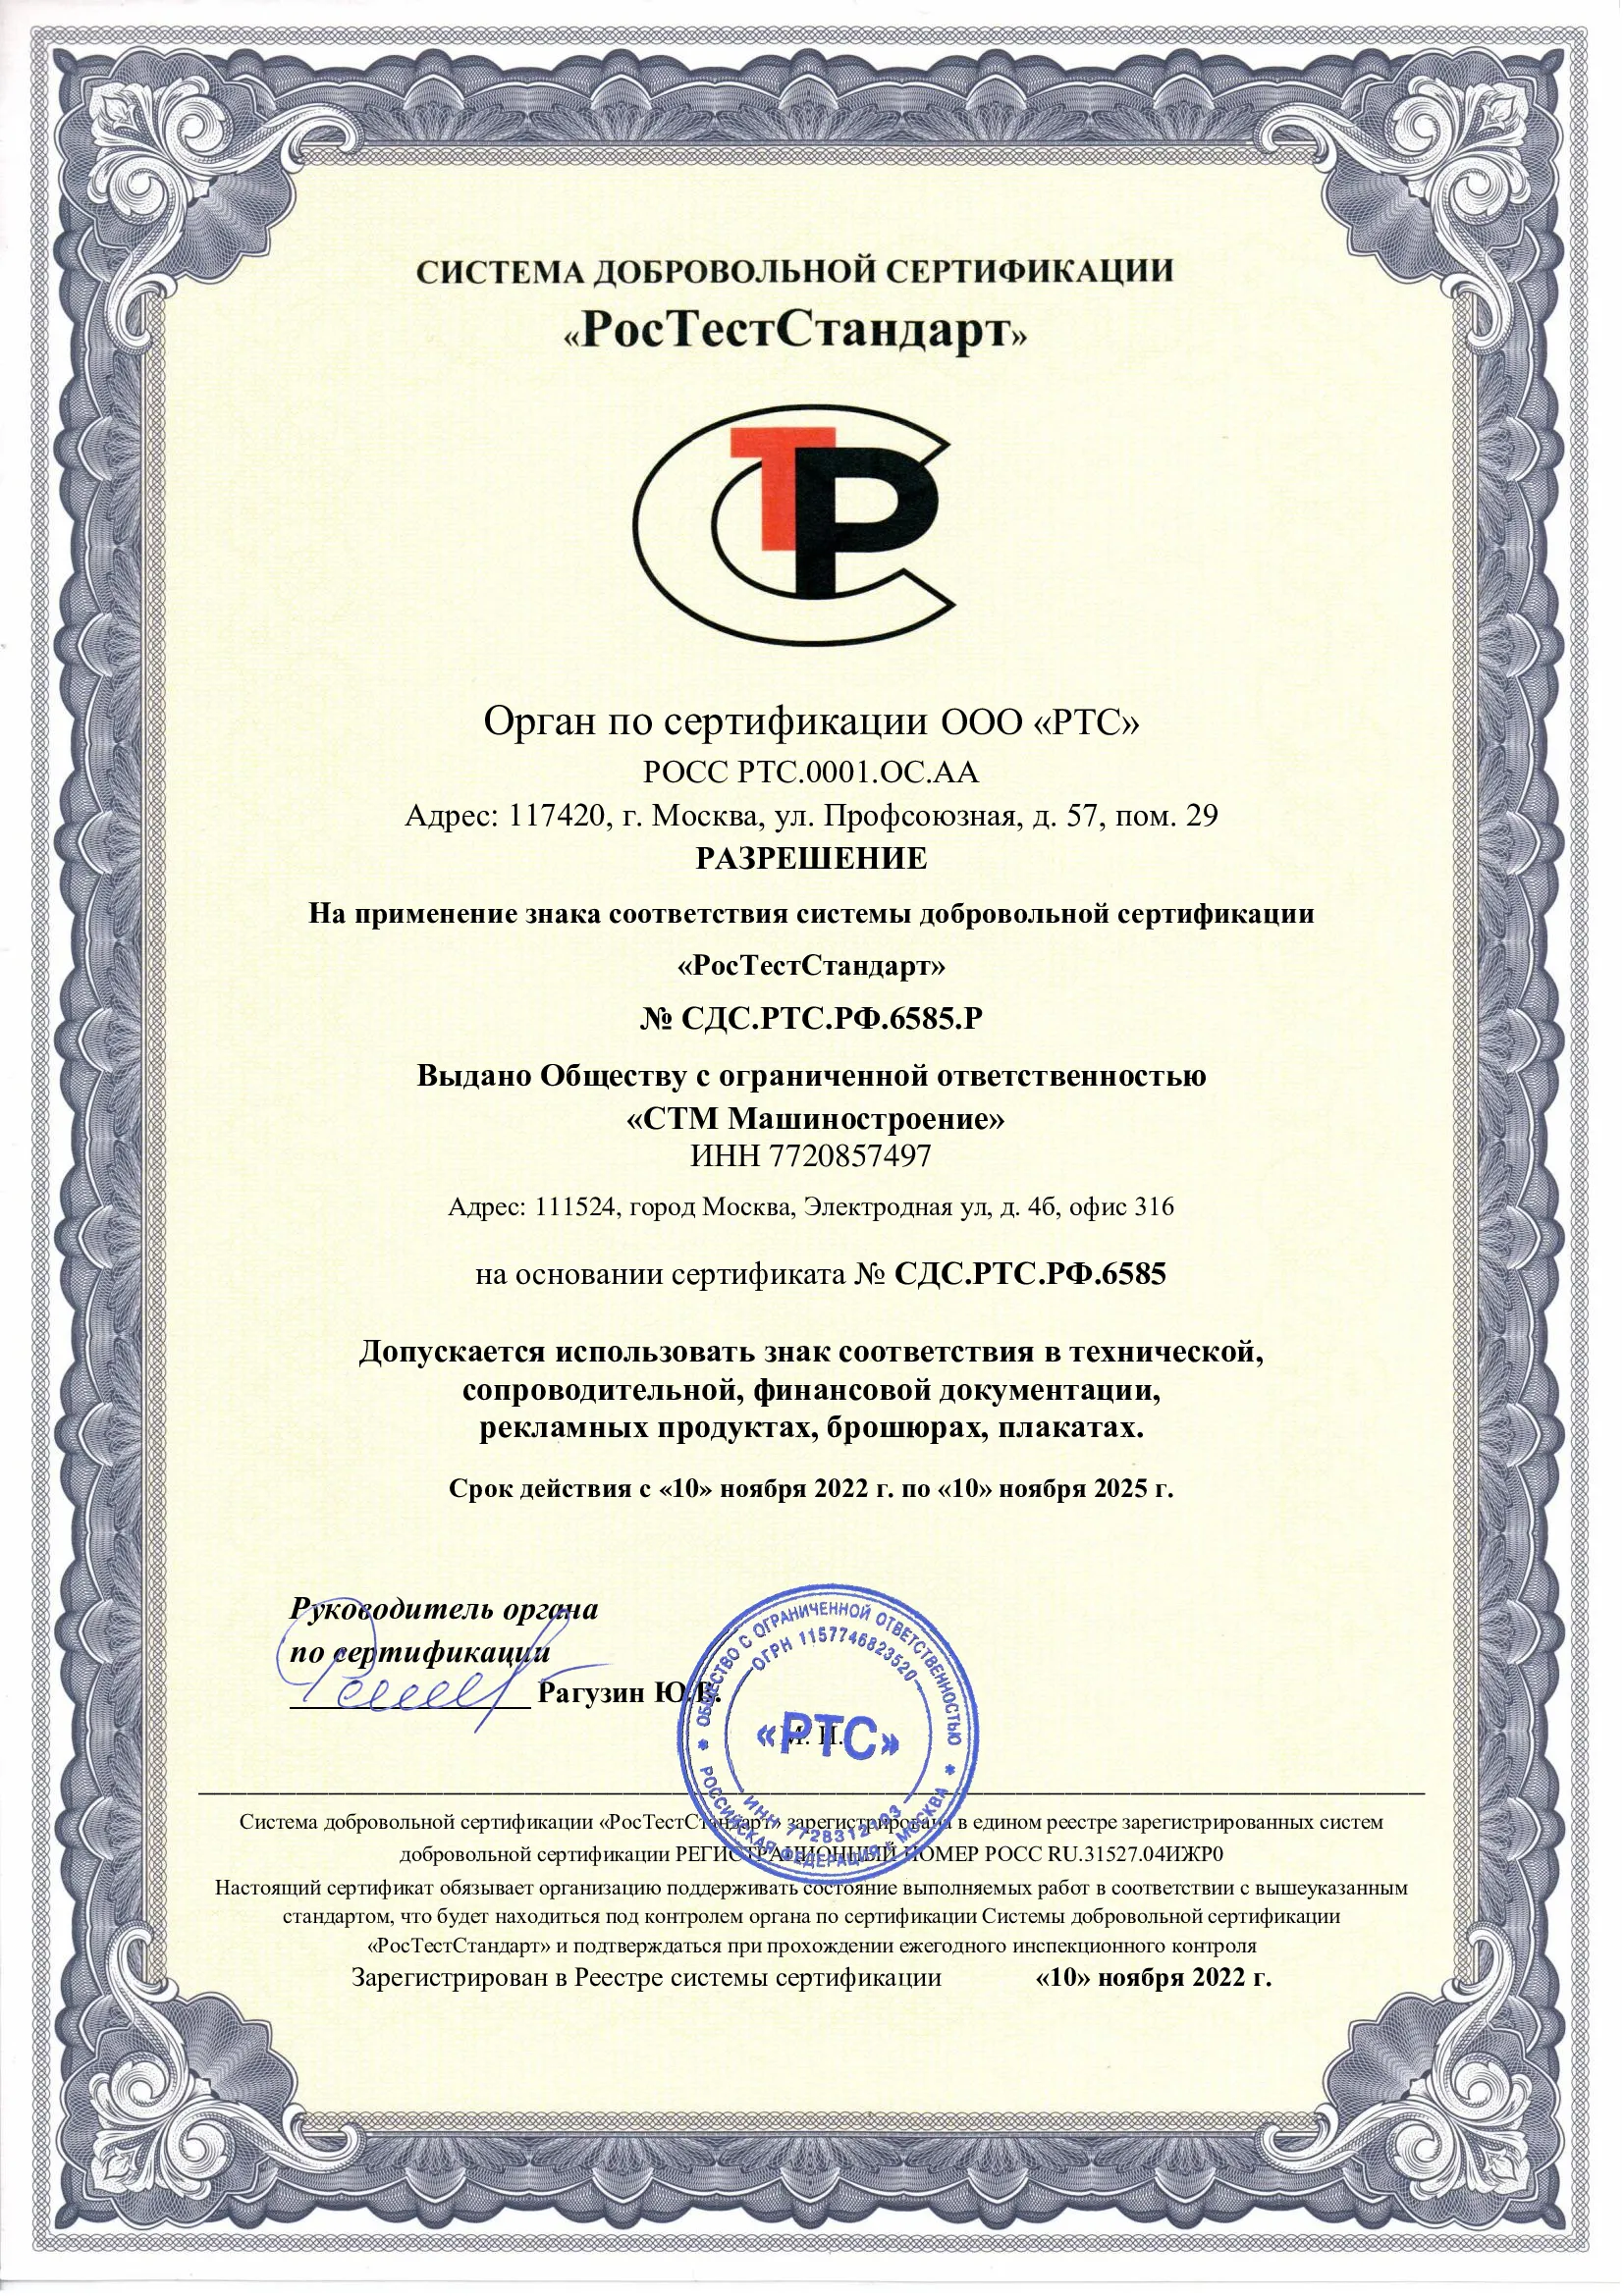 Сертификат РосТестСтандарт "Разрешение на применение знака добровольной сертификации"